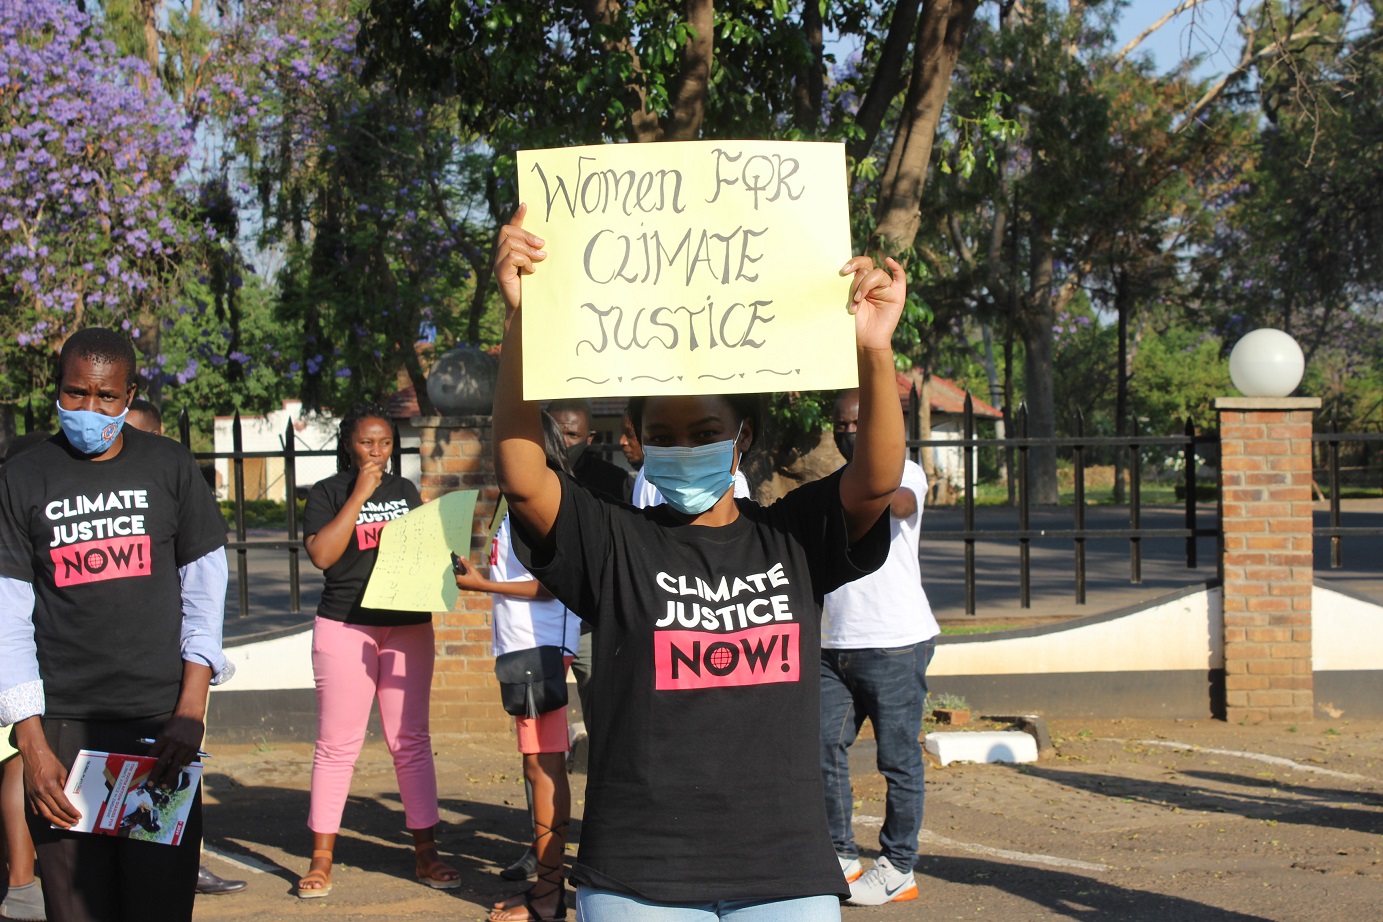 Adelaide Mashingaidze, do Zimbabue, pede justiça climática para os líderes mundiais. Foto Divulgação